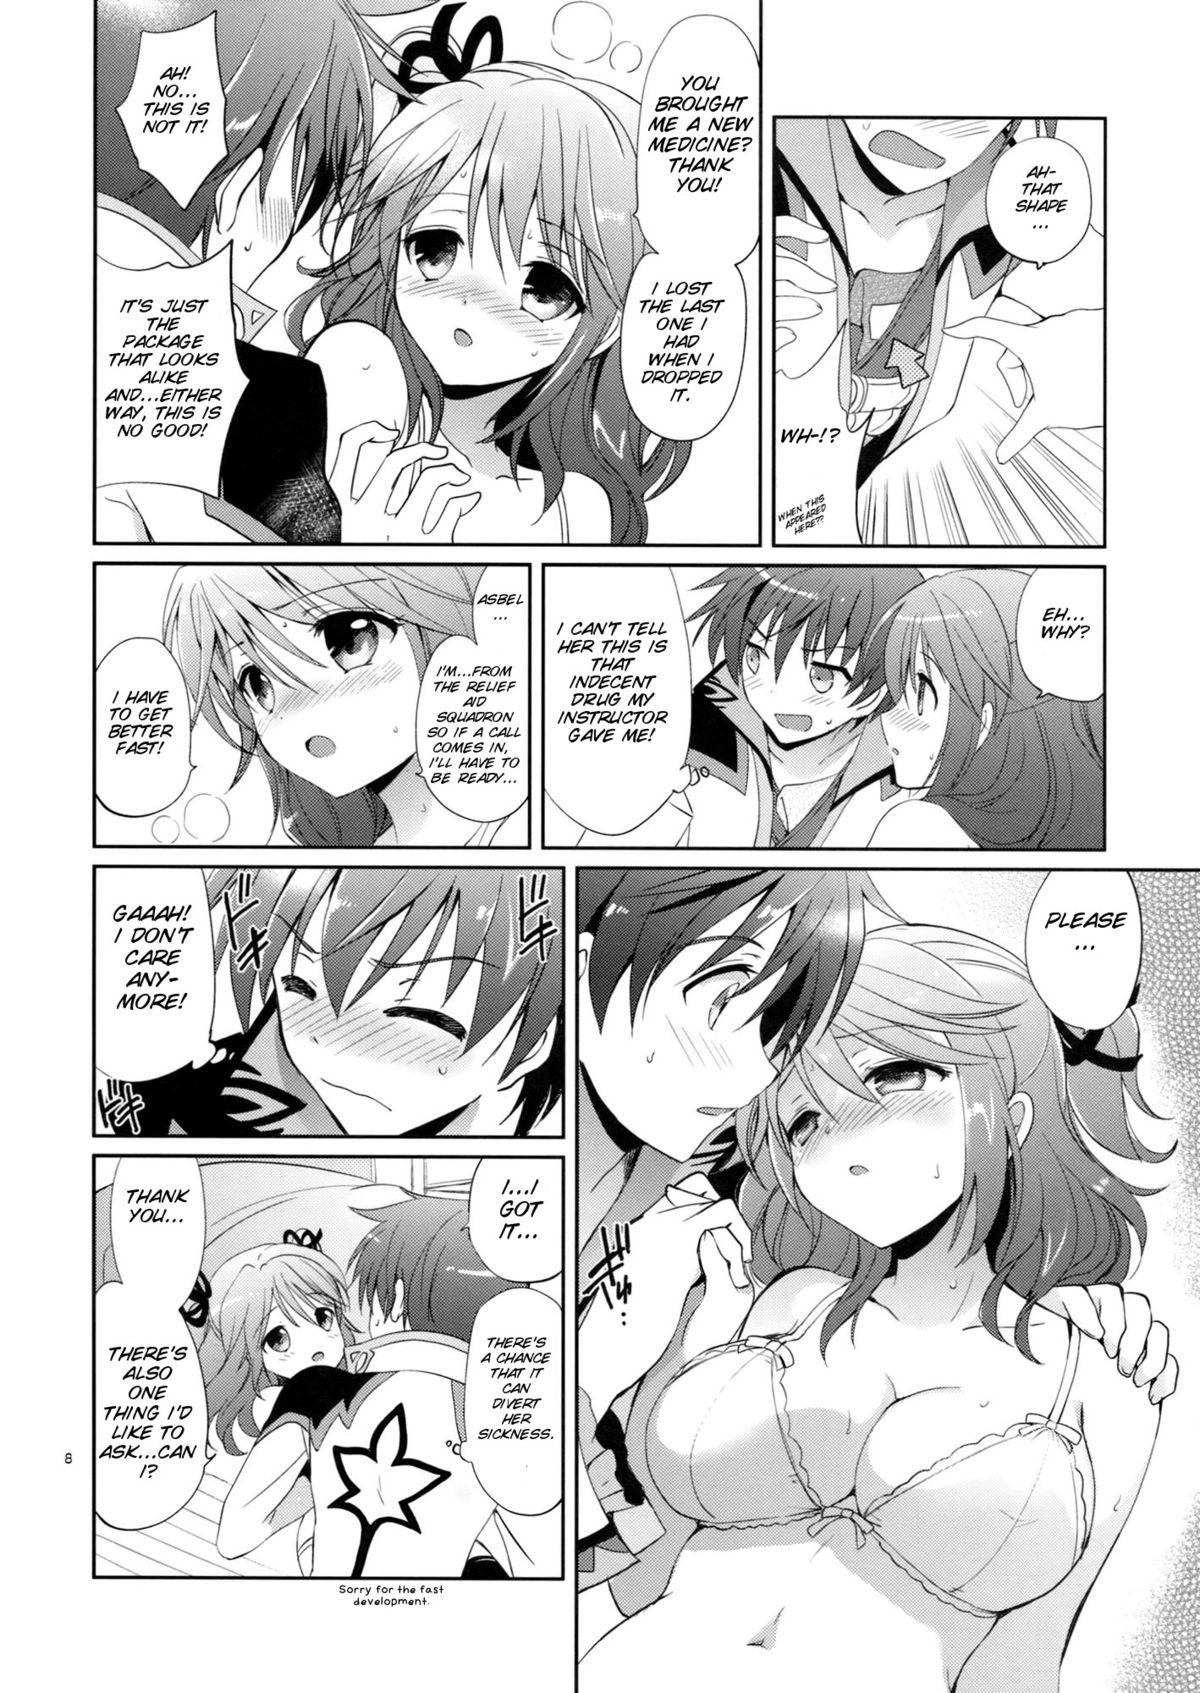 Scandal Cheria-chan no Okusuri Techou - Tales of graces Petite Teenager - Page 9